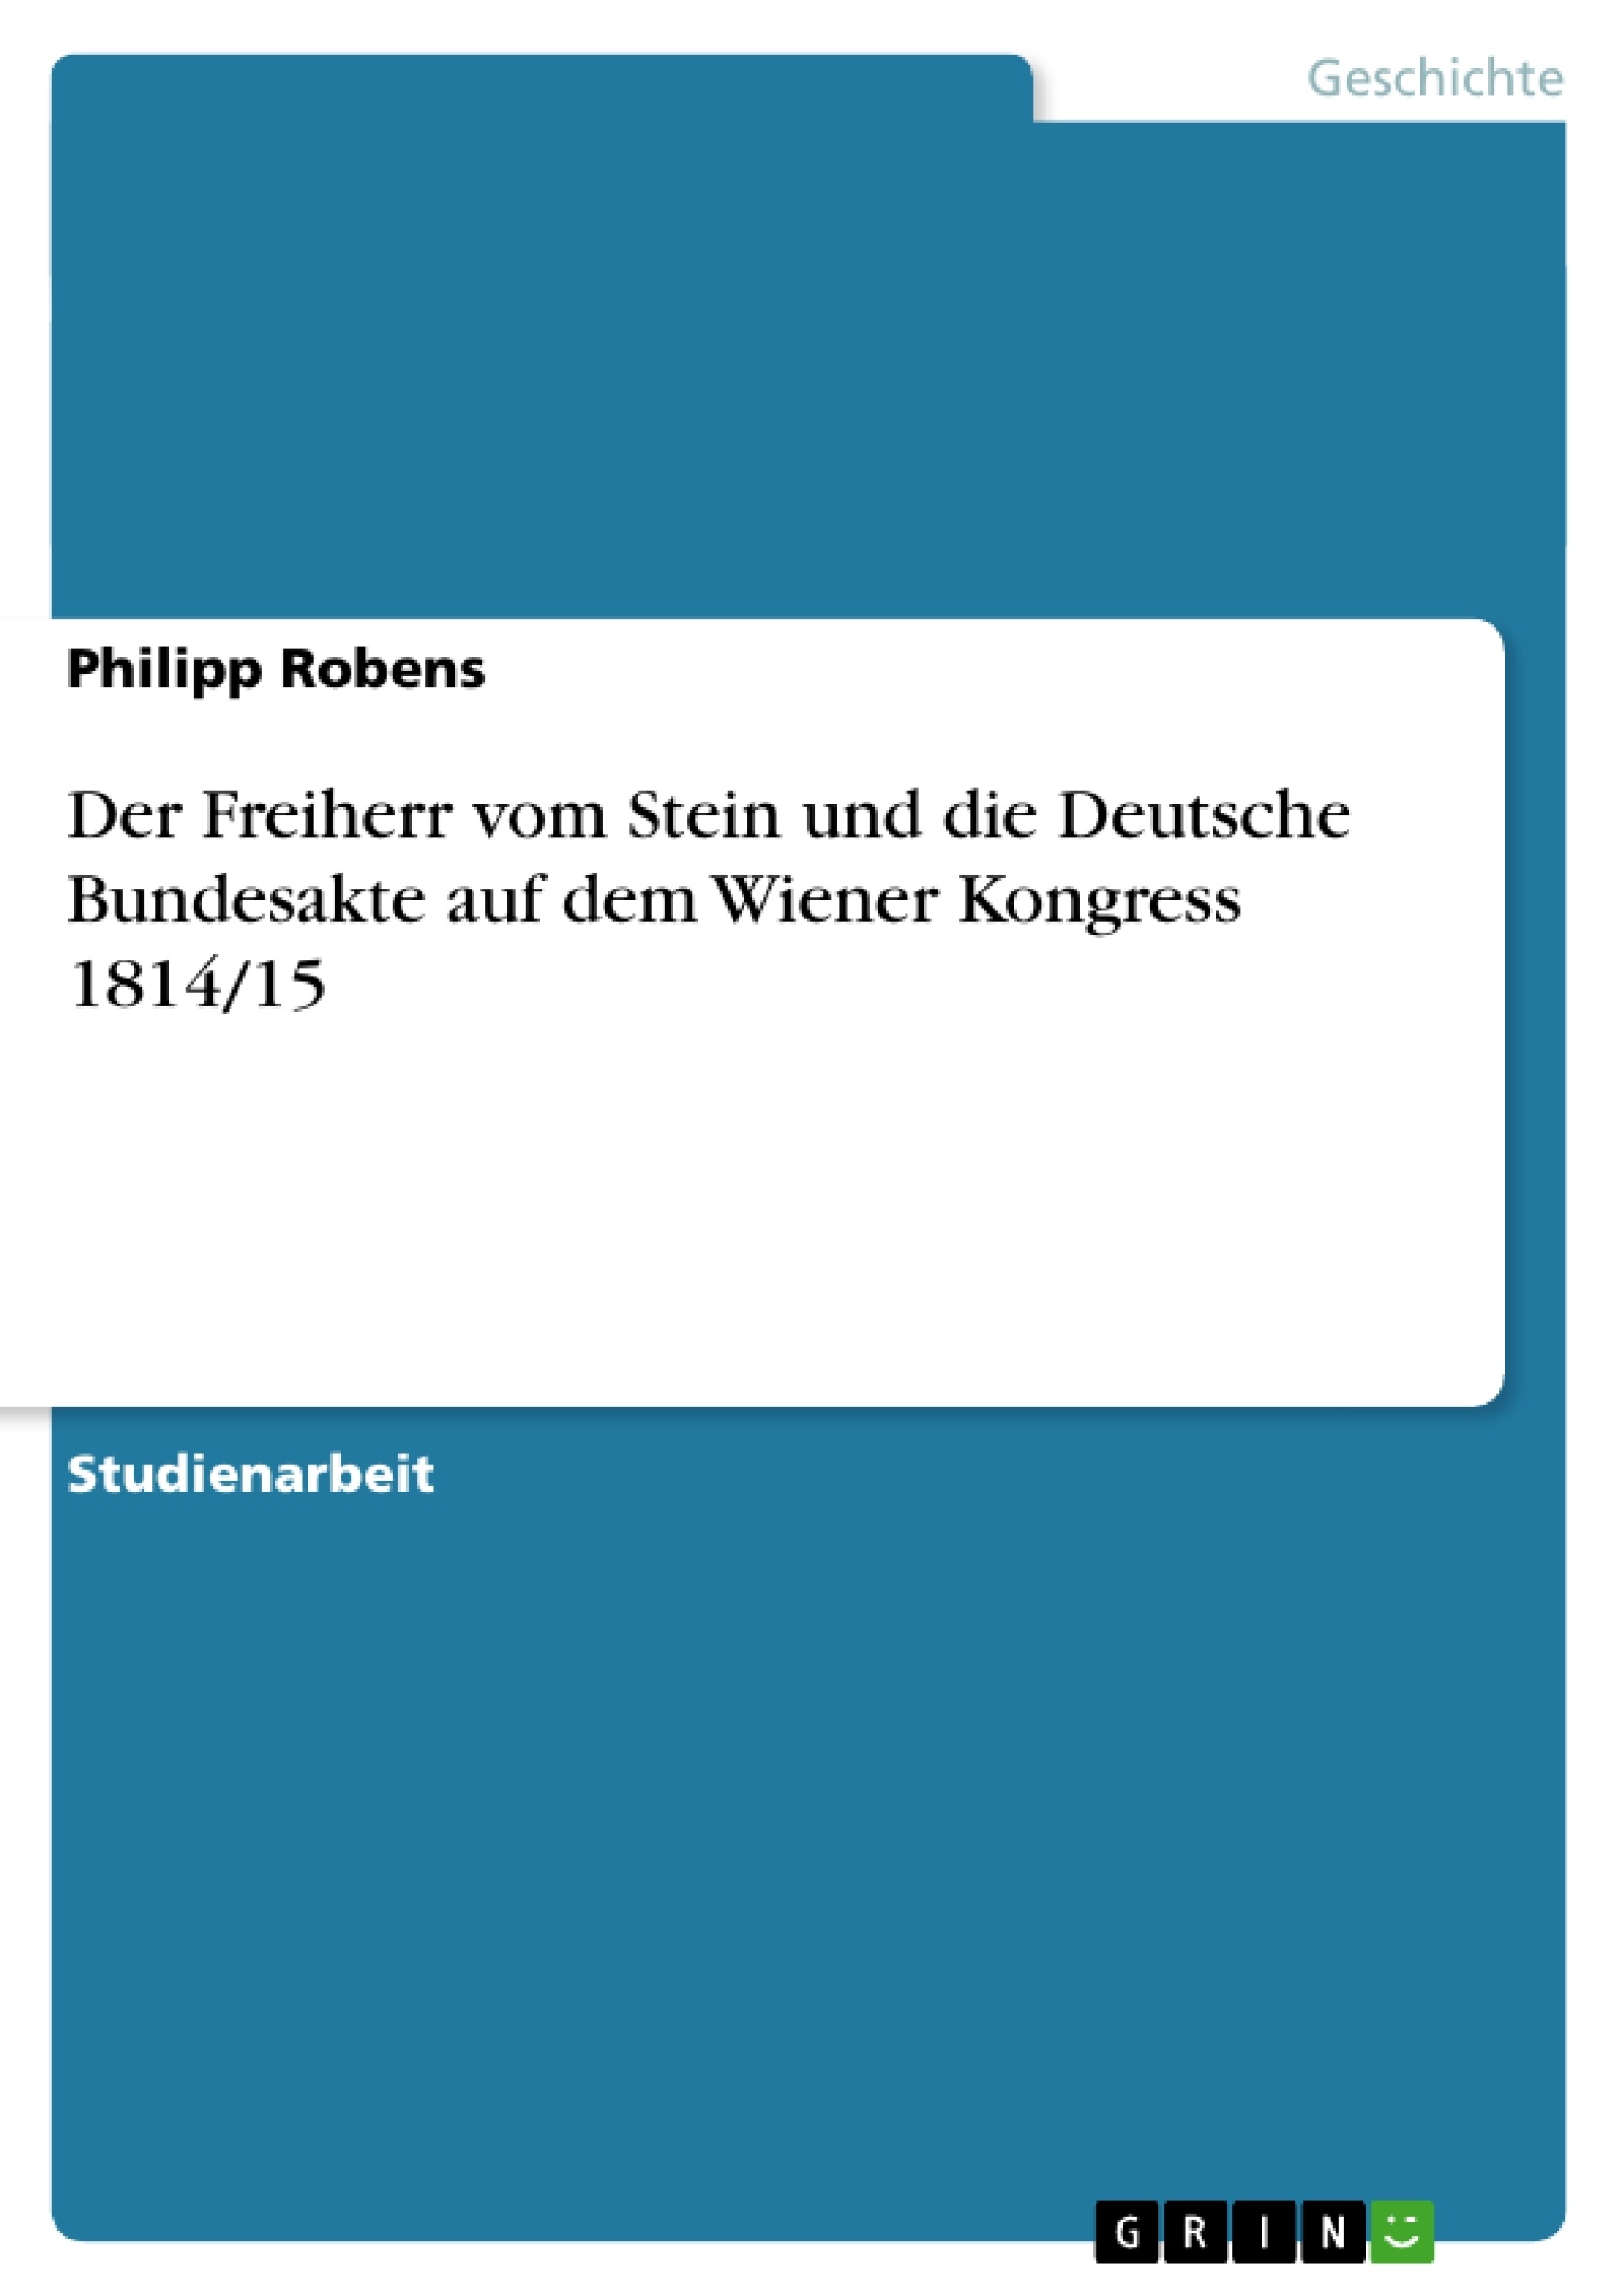 Título: Der Freiherr vom Stein und die Deutsche Bundesakte auf dem Wiener Kongress 1814/15